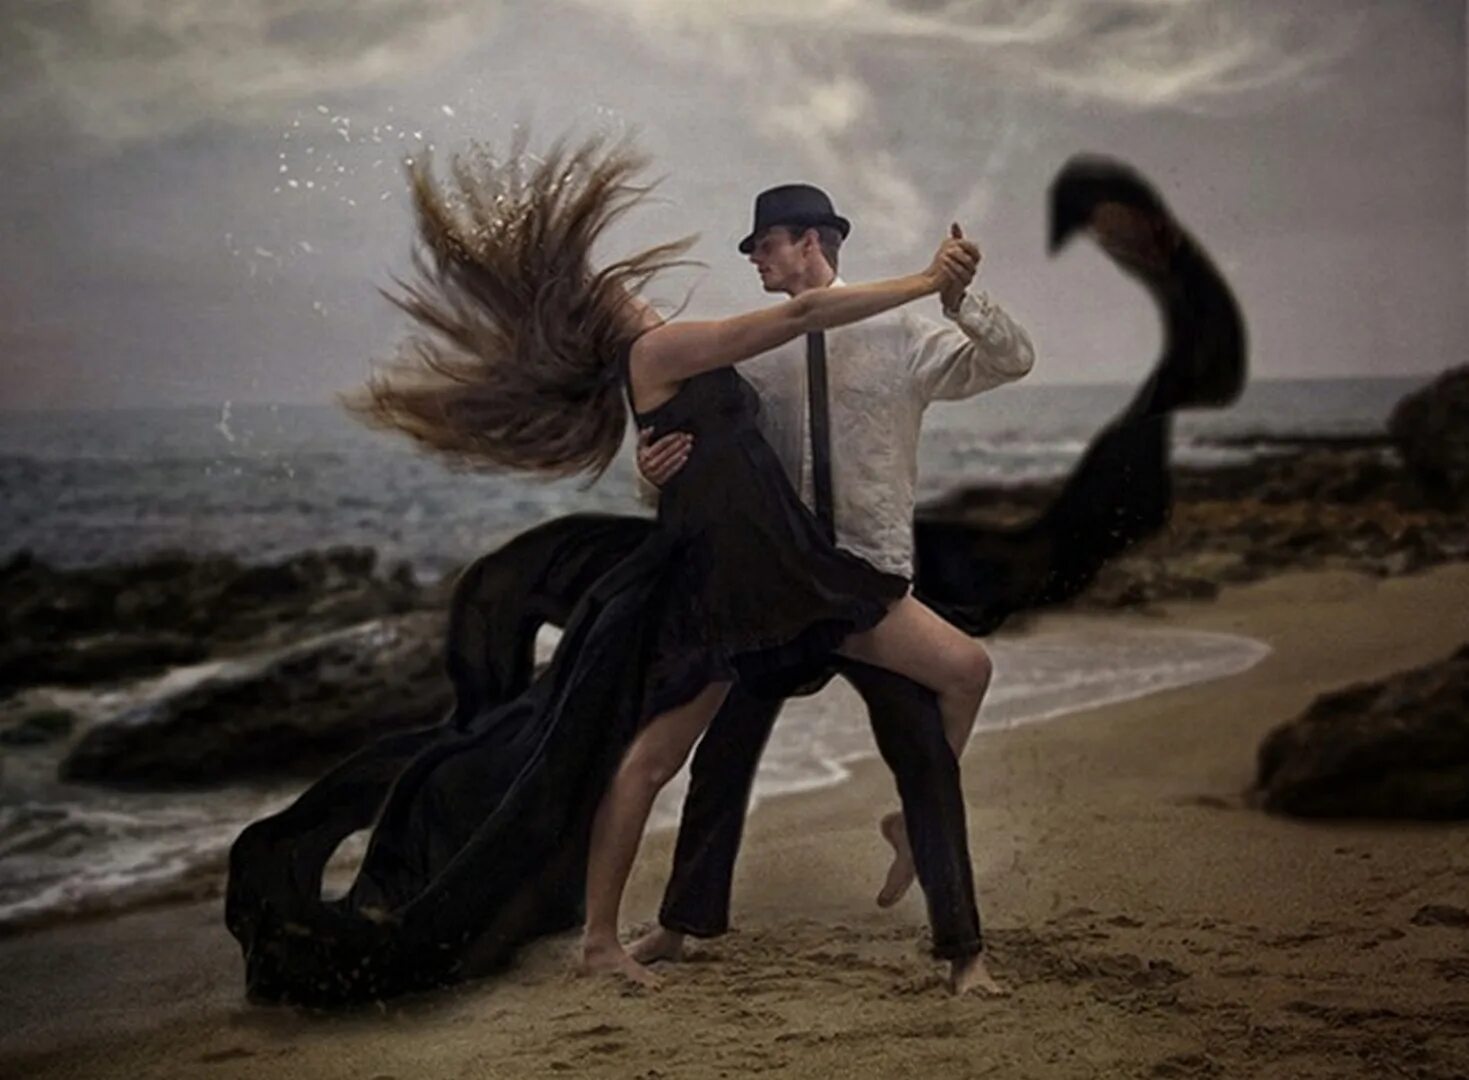 Танцы парни под песню. Танец мужчины и женщины. Танцы для влюбленных. Влюбленные в танце. Двое танцуют.